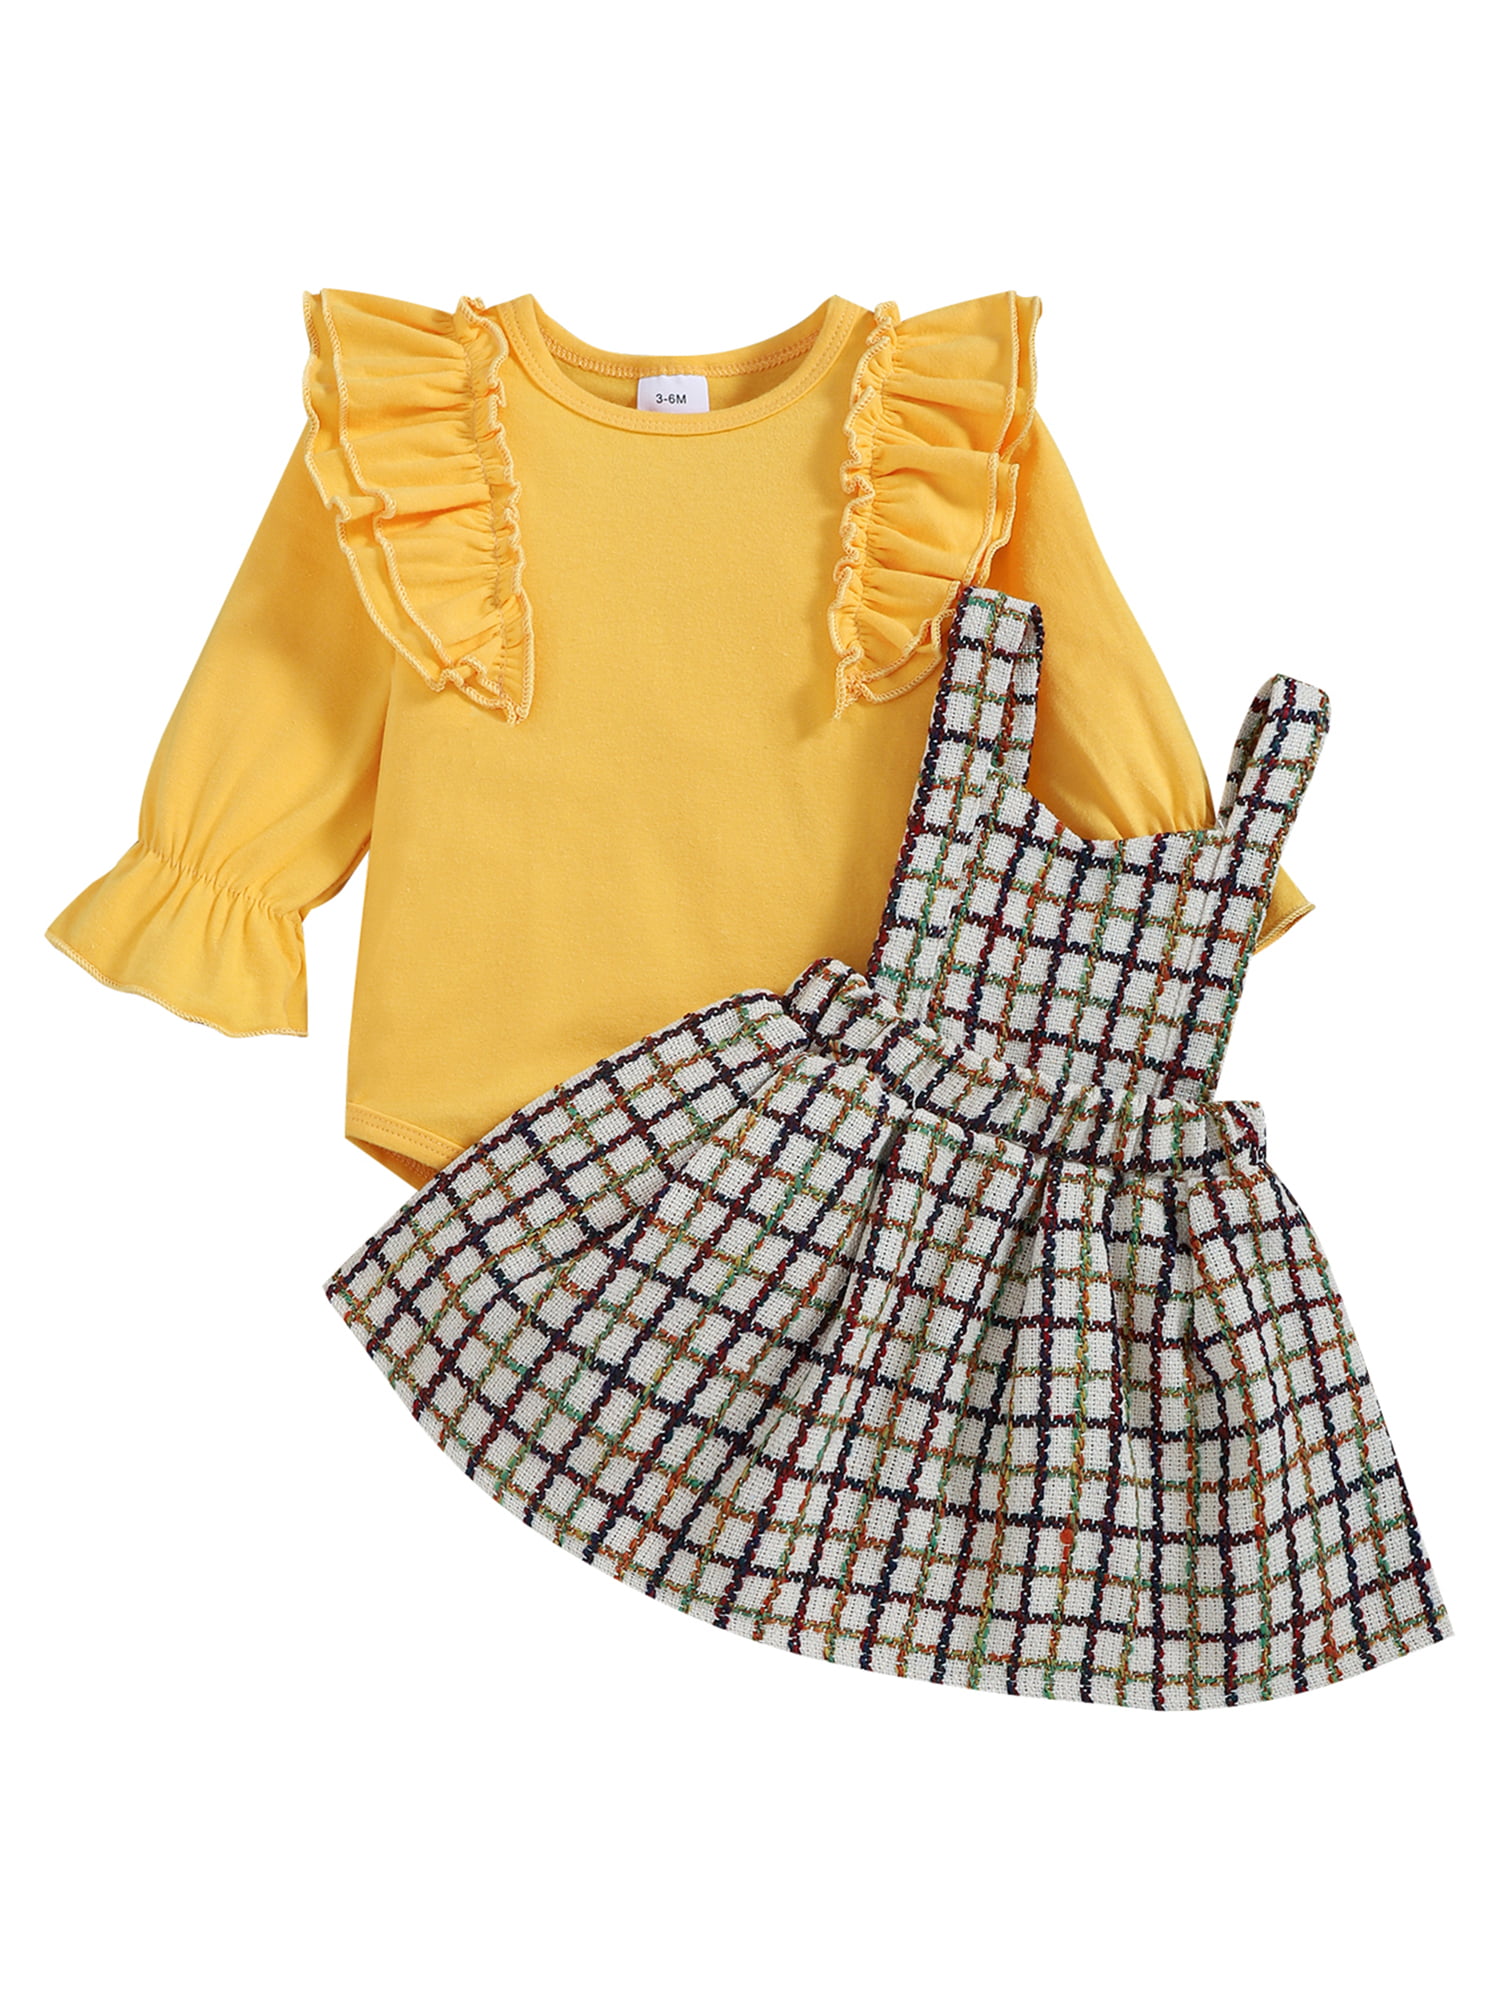 Baby Girls BALLERINA DRESS Skirted Bodysuit YELLOW RUFFLE Sweet Kitty 0-3 3-6 MO